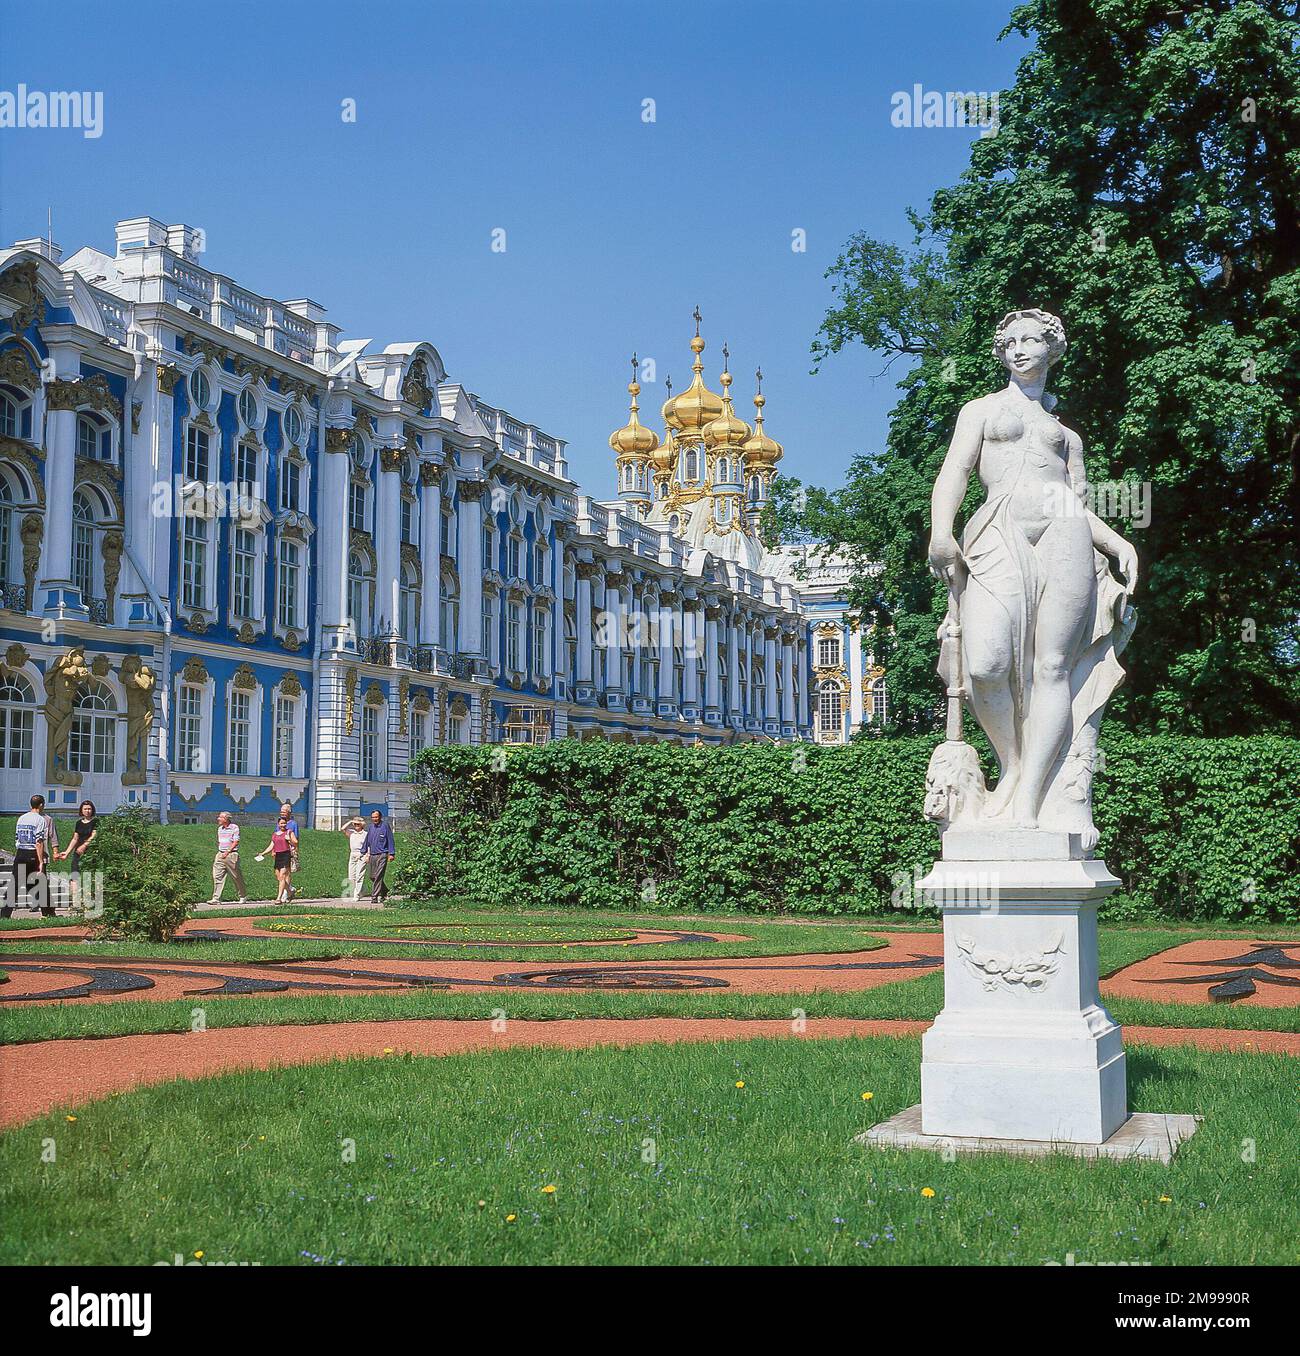 Vista del palazzo e dei giardini, il Palazzo di Caterina, Pushkin, San Pietroburgo, regione nordoccidentale, Russia Foto Stock